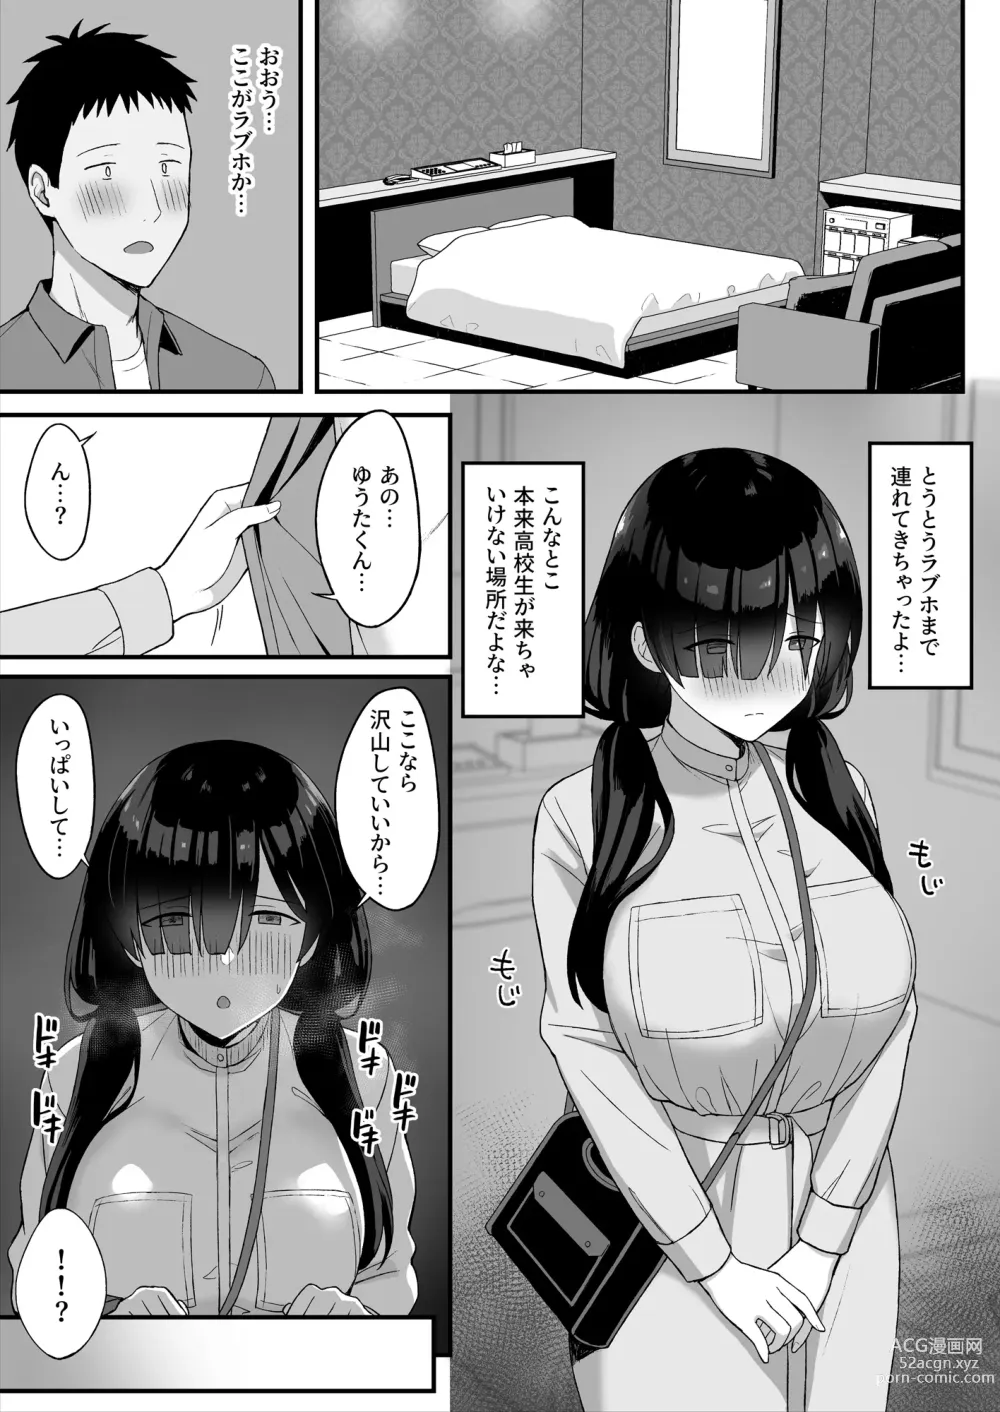 Page 36 of doujinshi 地味巨乳のストーカー女に告白されたのでヤりまくってみた話